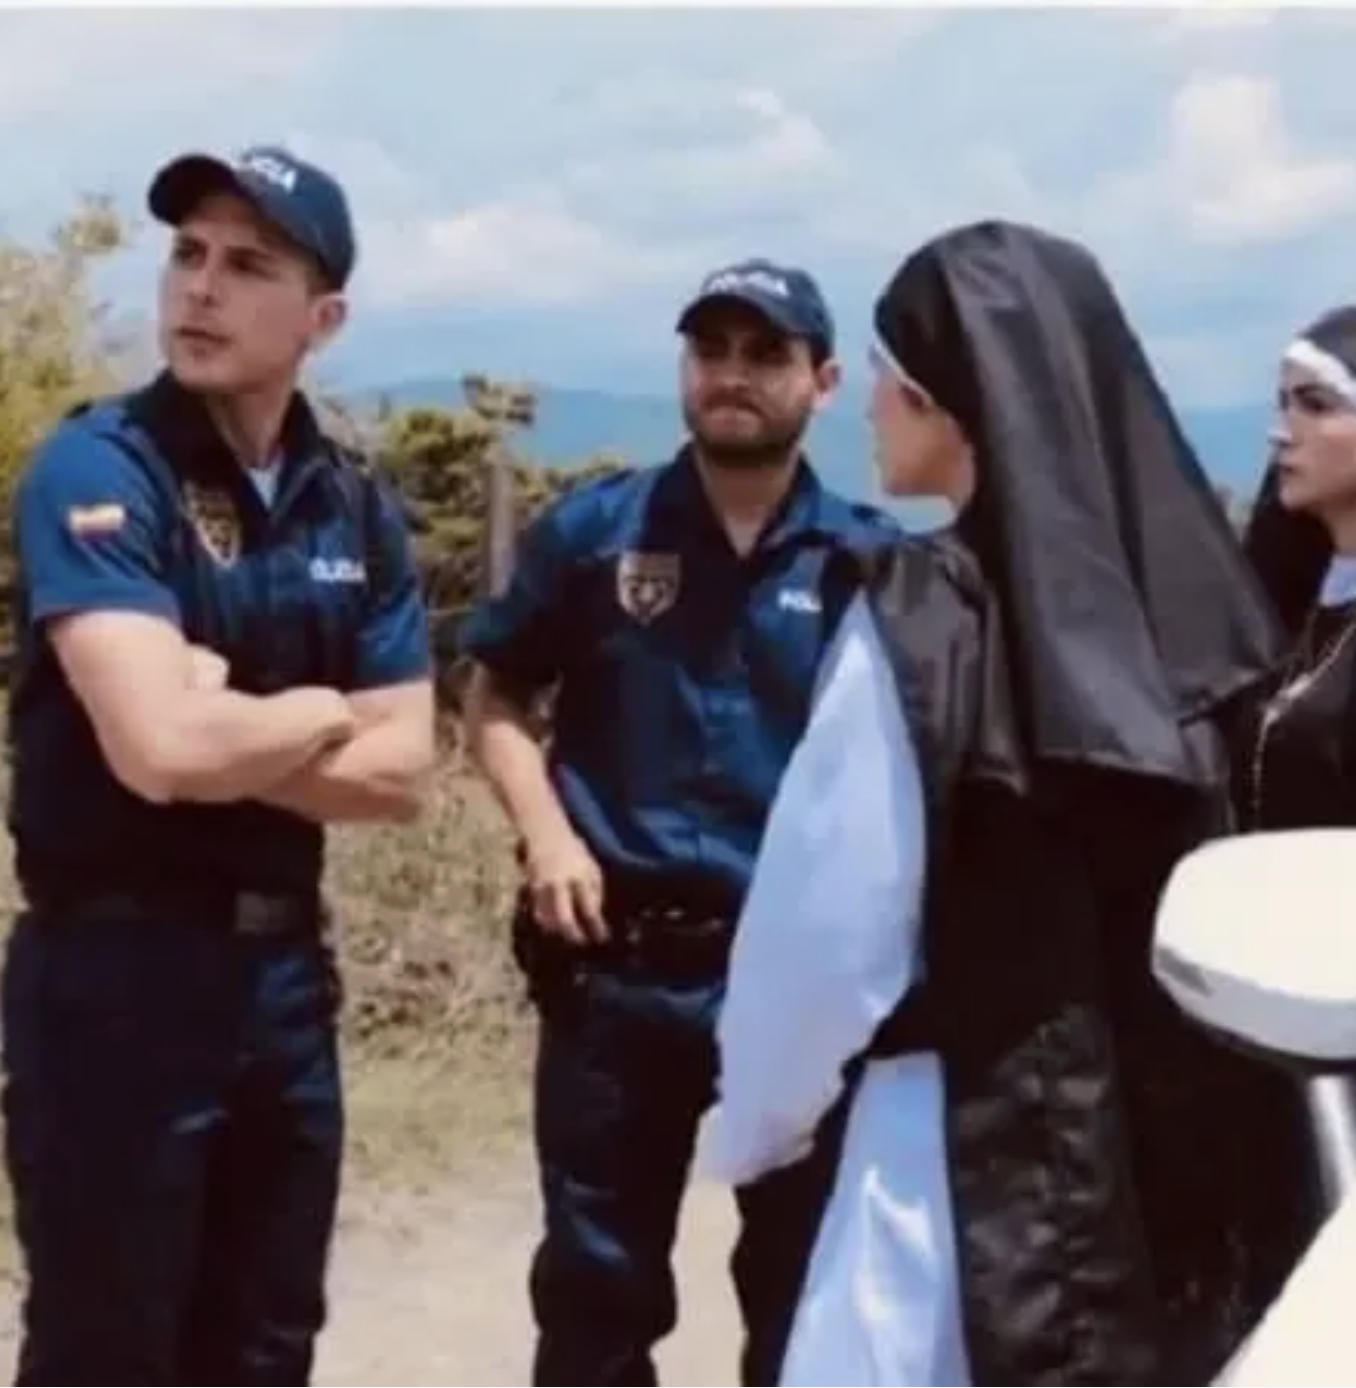 2 nuns and 2 cops